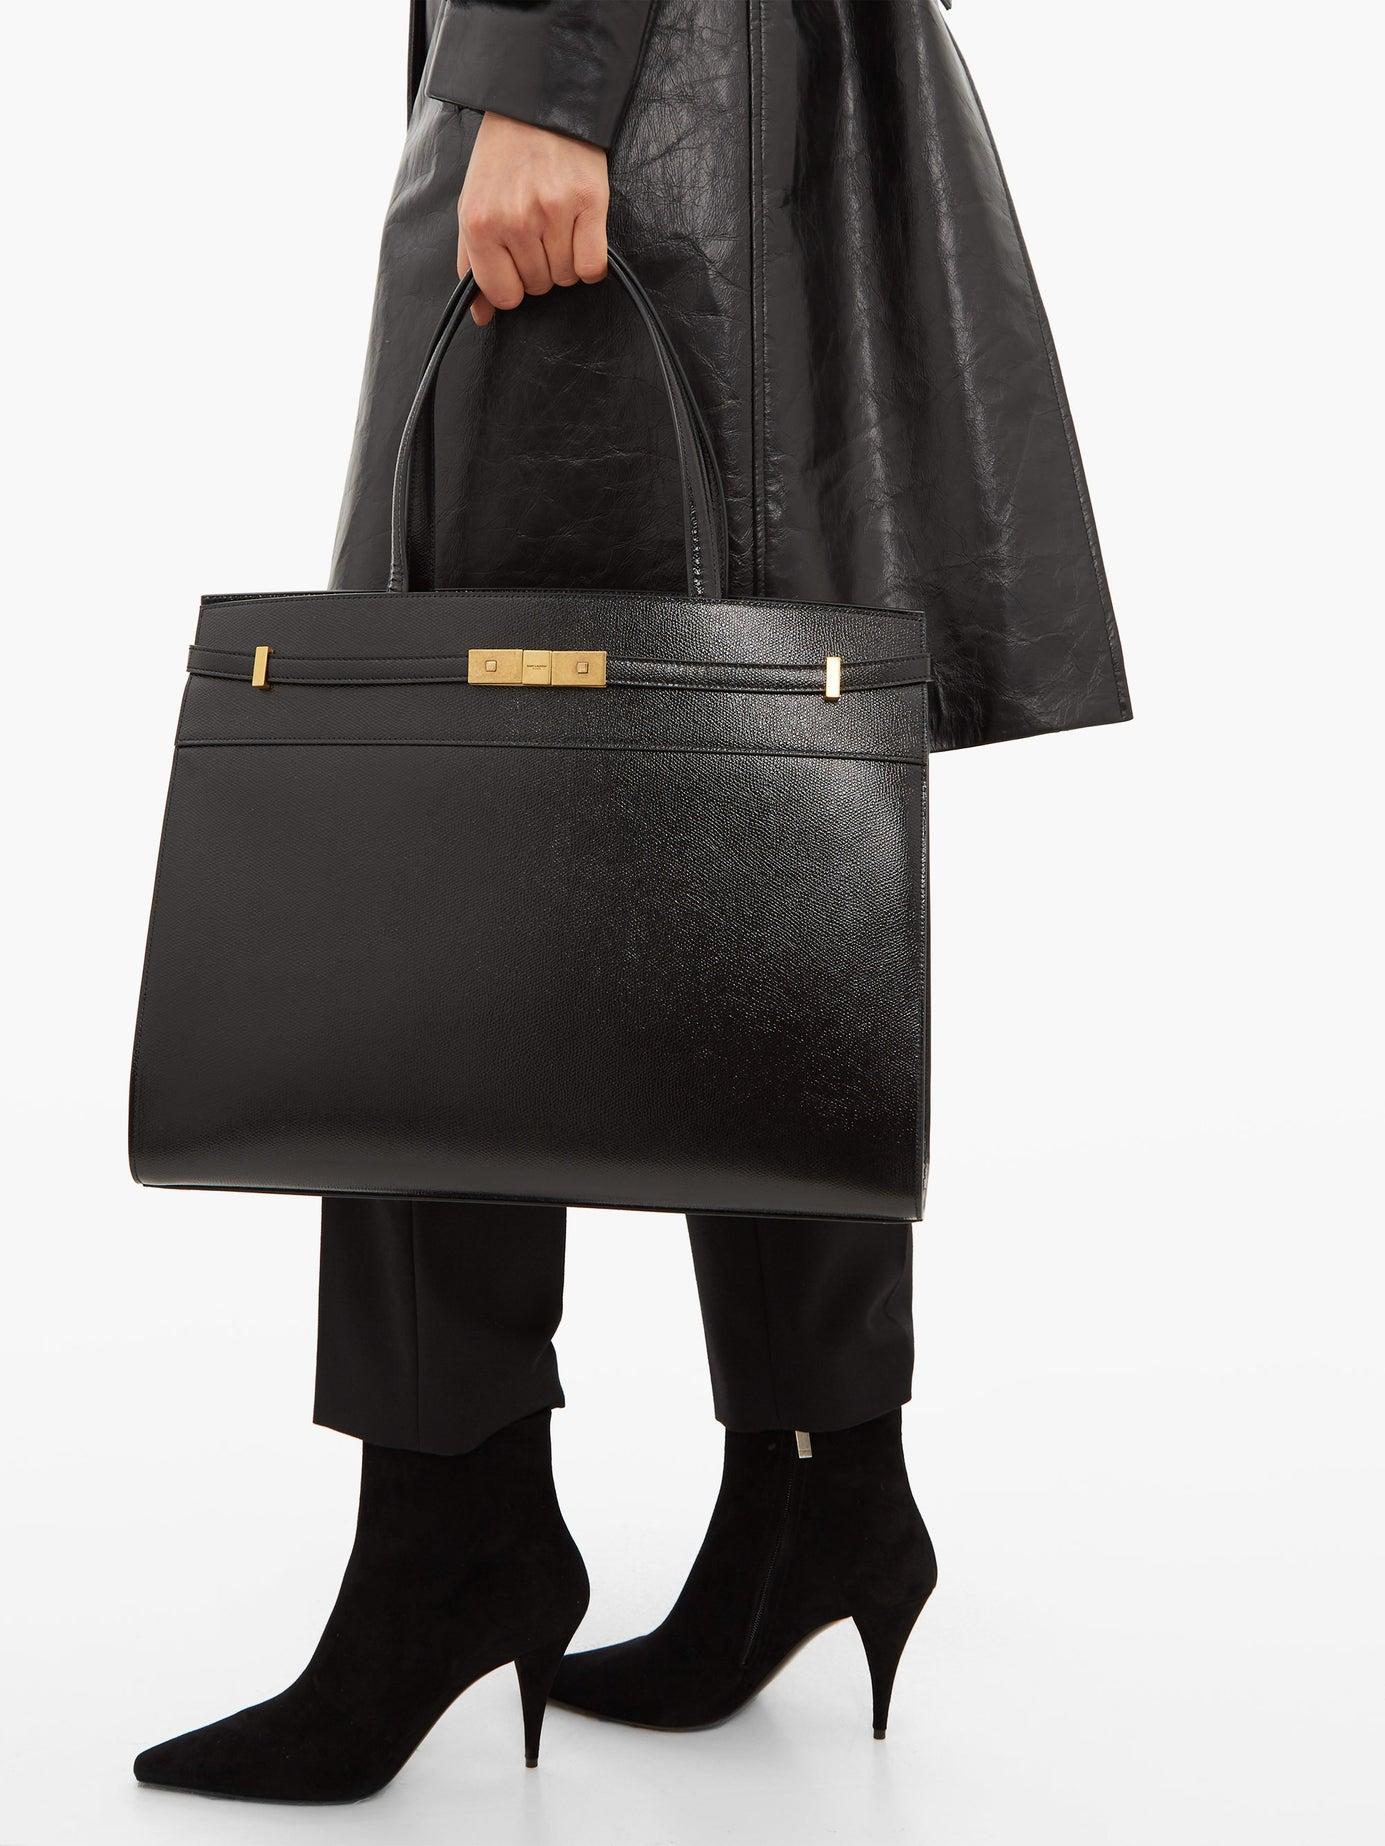 Saint Laurent Manhattan Medium Leather Tote Bag in Black